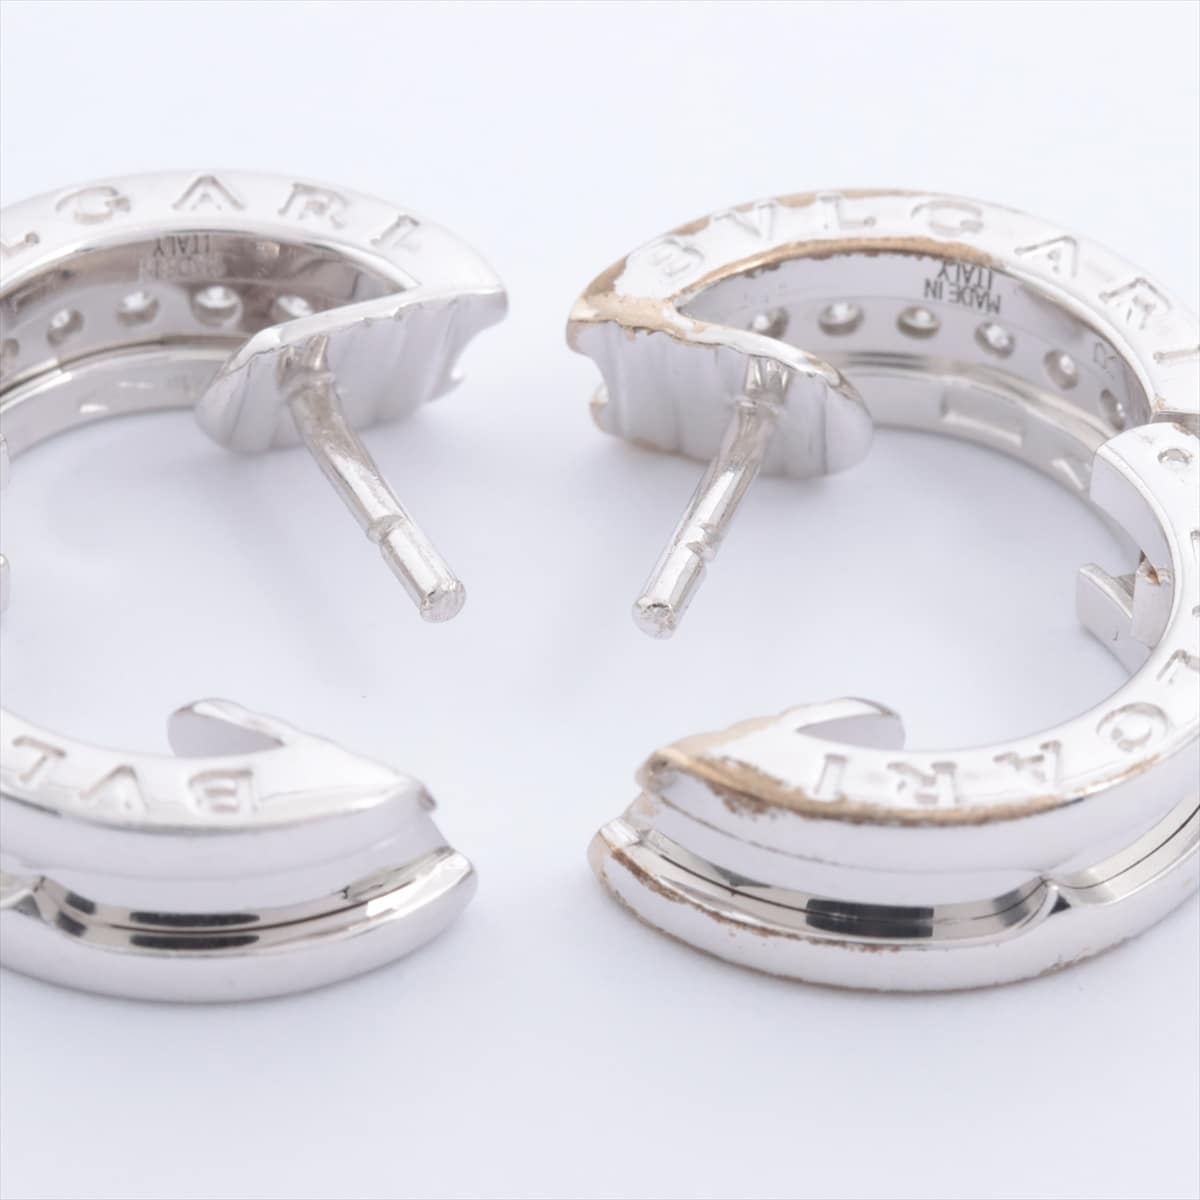 Bvlgari B.Zero 1 diamond Piercing jewelry 750 WG 8.3g